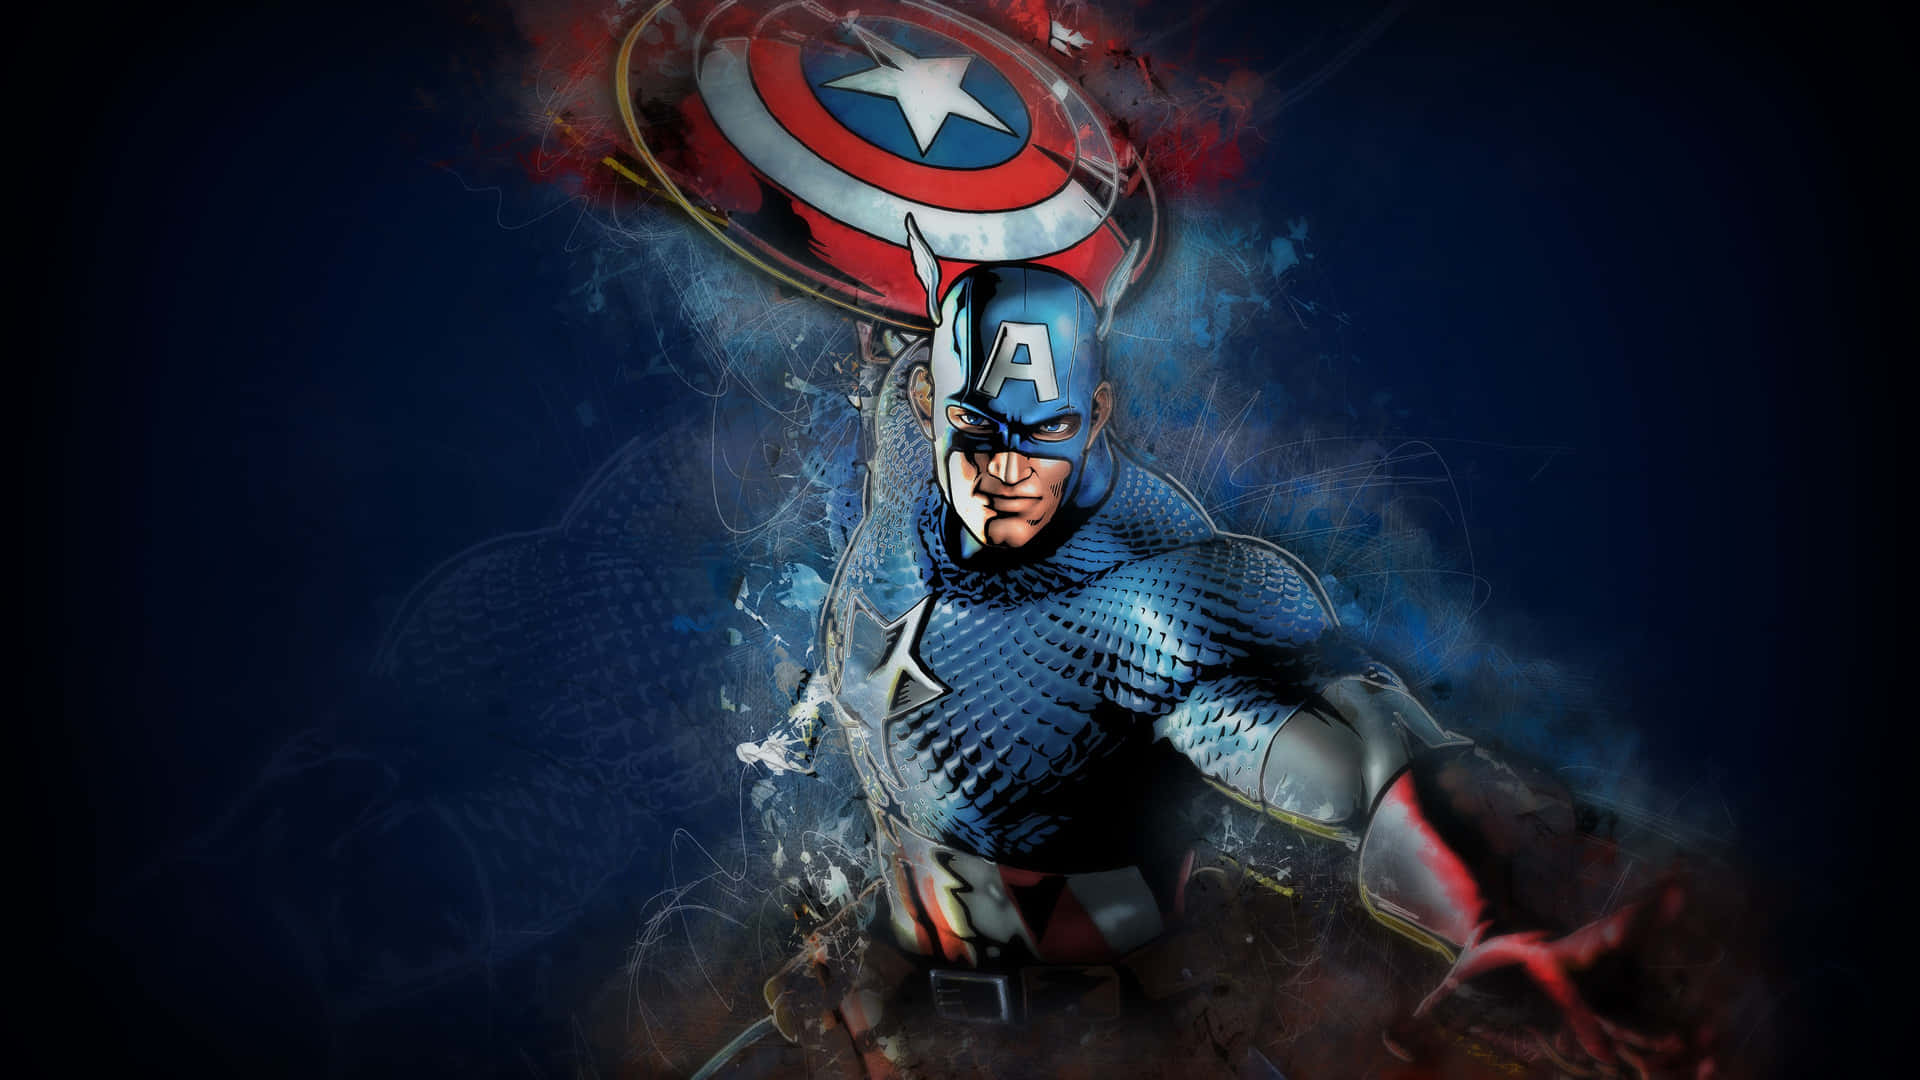 Visadin Patriotism Med Den Här Captain America Skrivbordsbakgrunden. Wallpaper